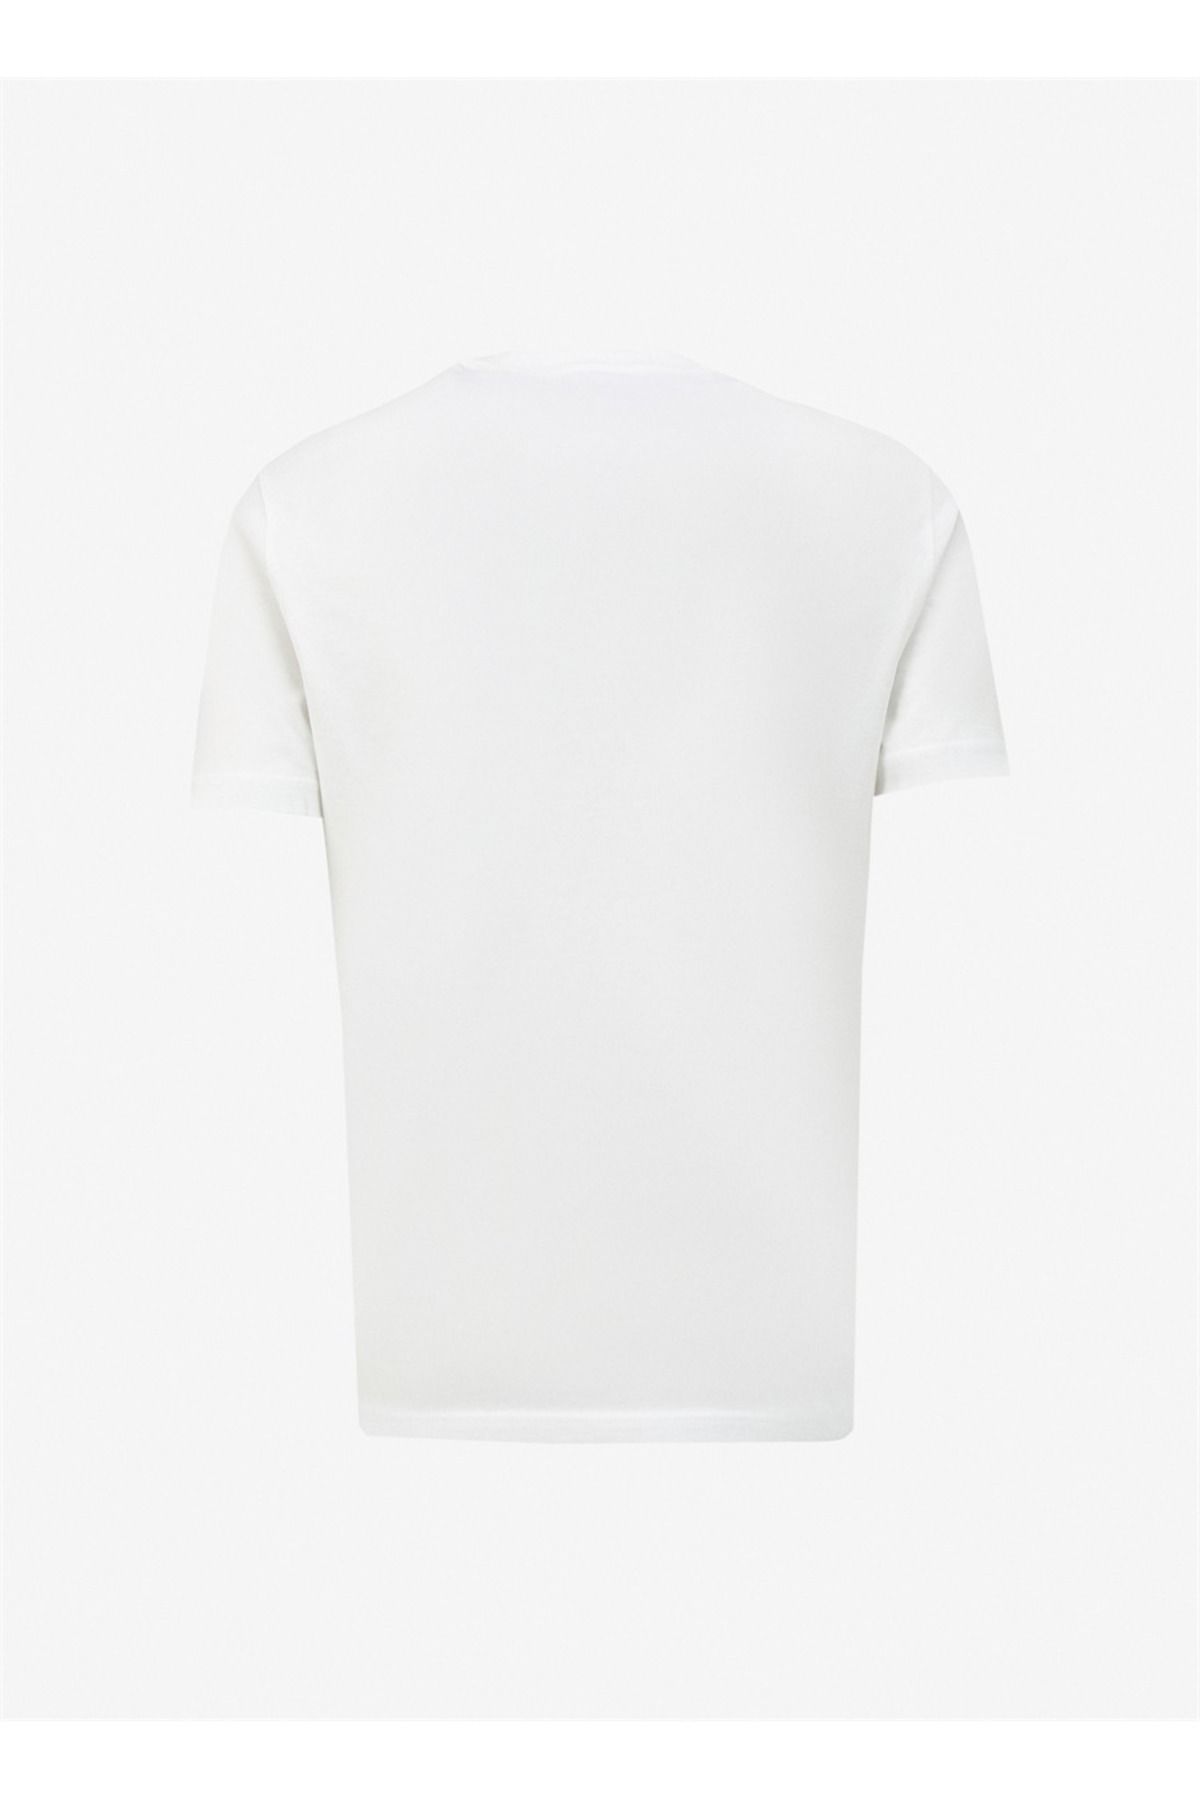 Lee تی شرت مردان معمولی L241578100 سفید